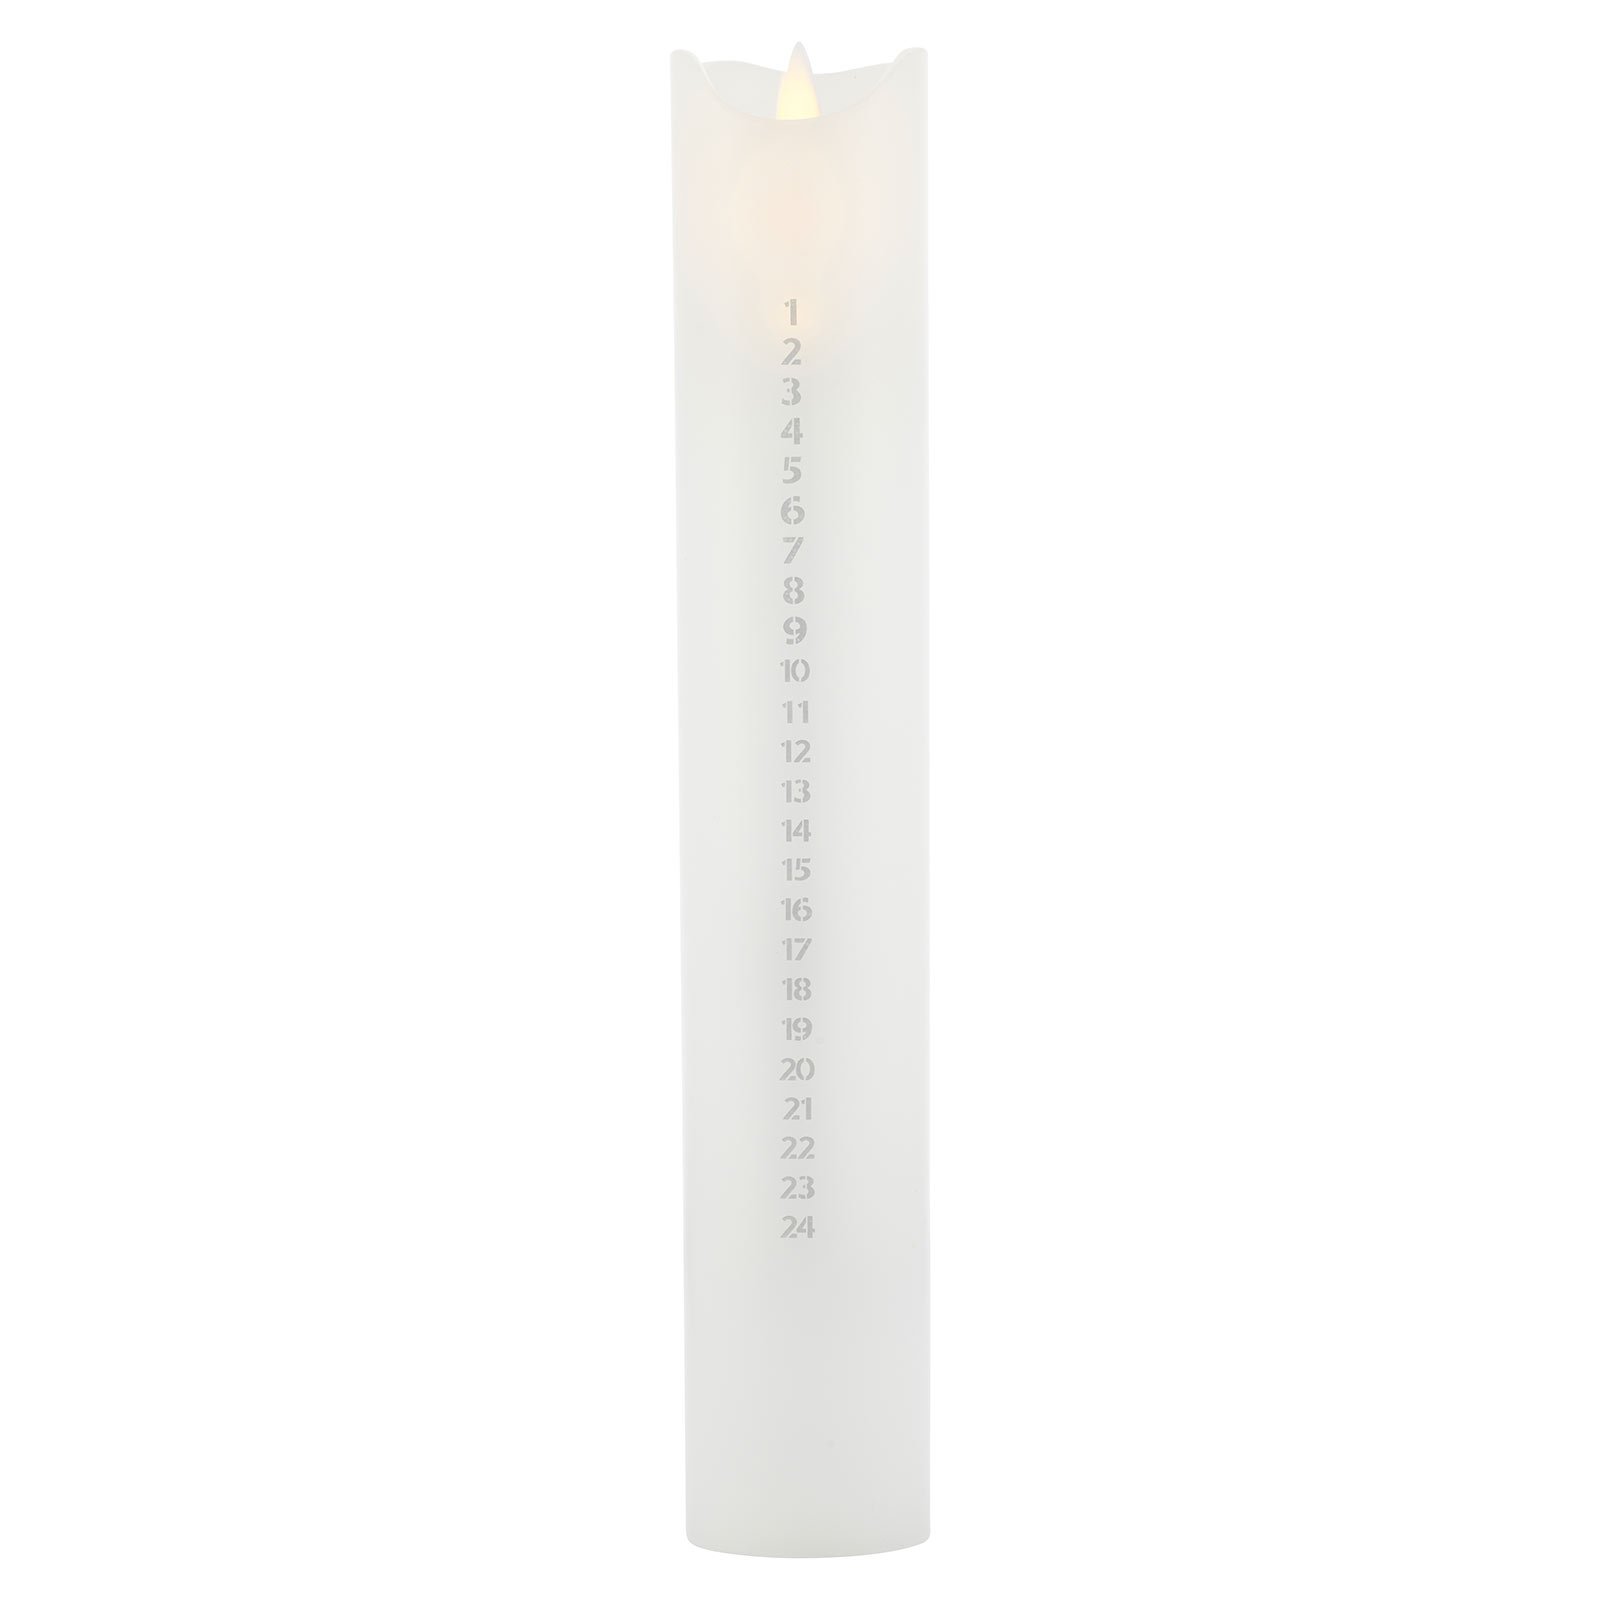 LED sviečka Sara Calendar, biela/strieborná, výška 29 cm